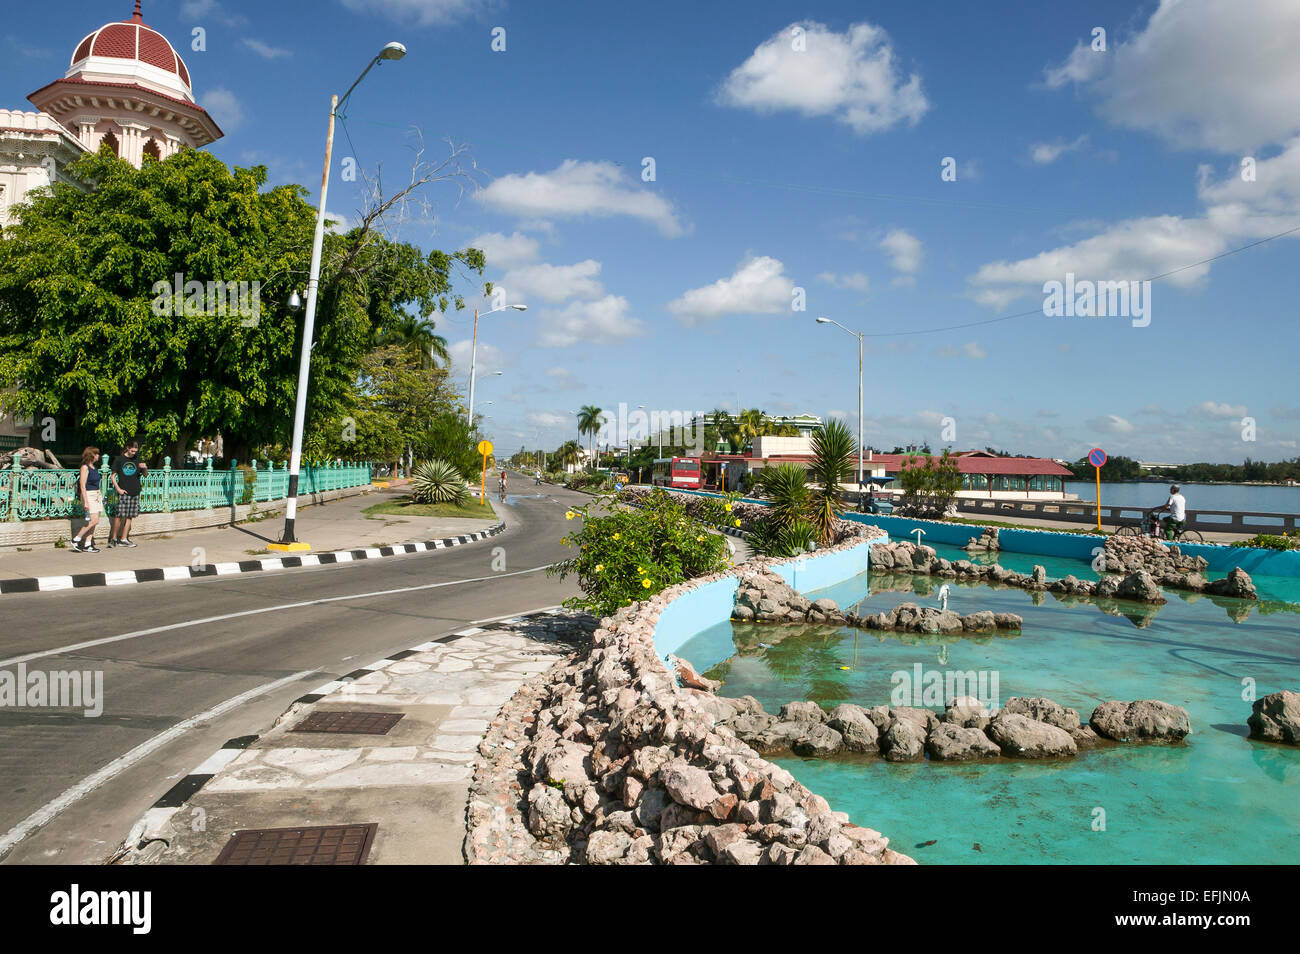 Les touristes américains debout sur le trottoir en face de l'hôtel Palacio de Valle, Punta Gorda le long d'une journée de décembre à Cienfuegos, Cuba. Banque D'Images